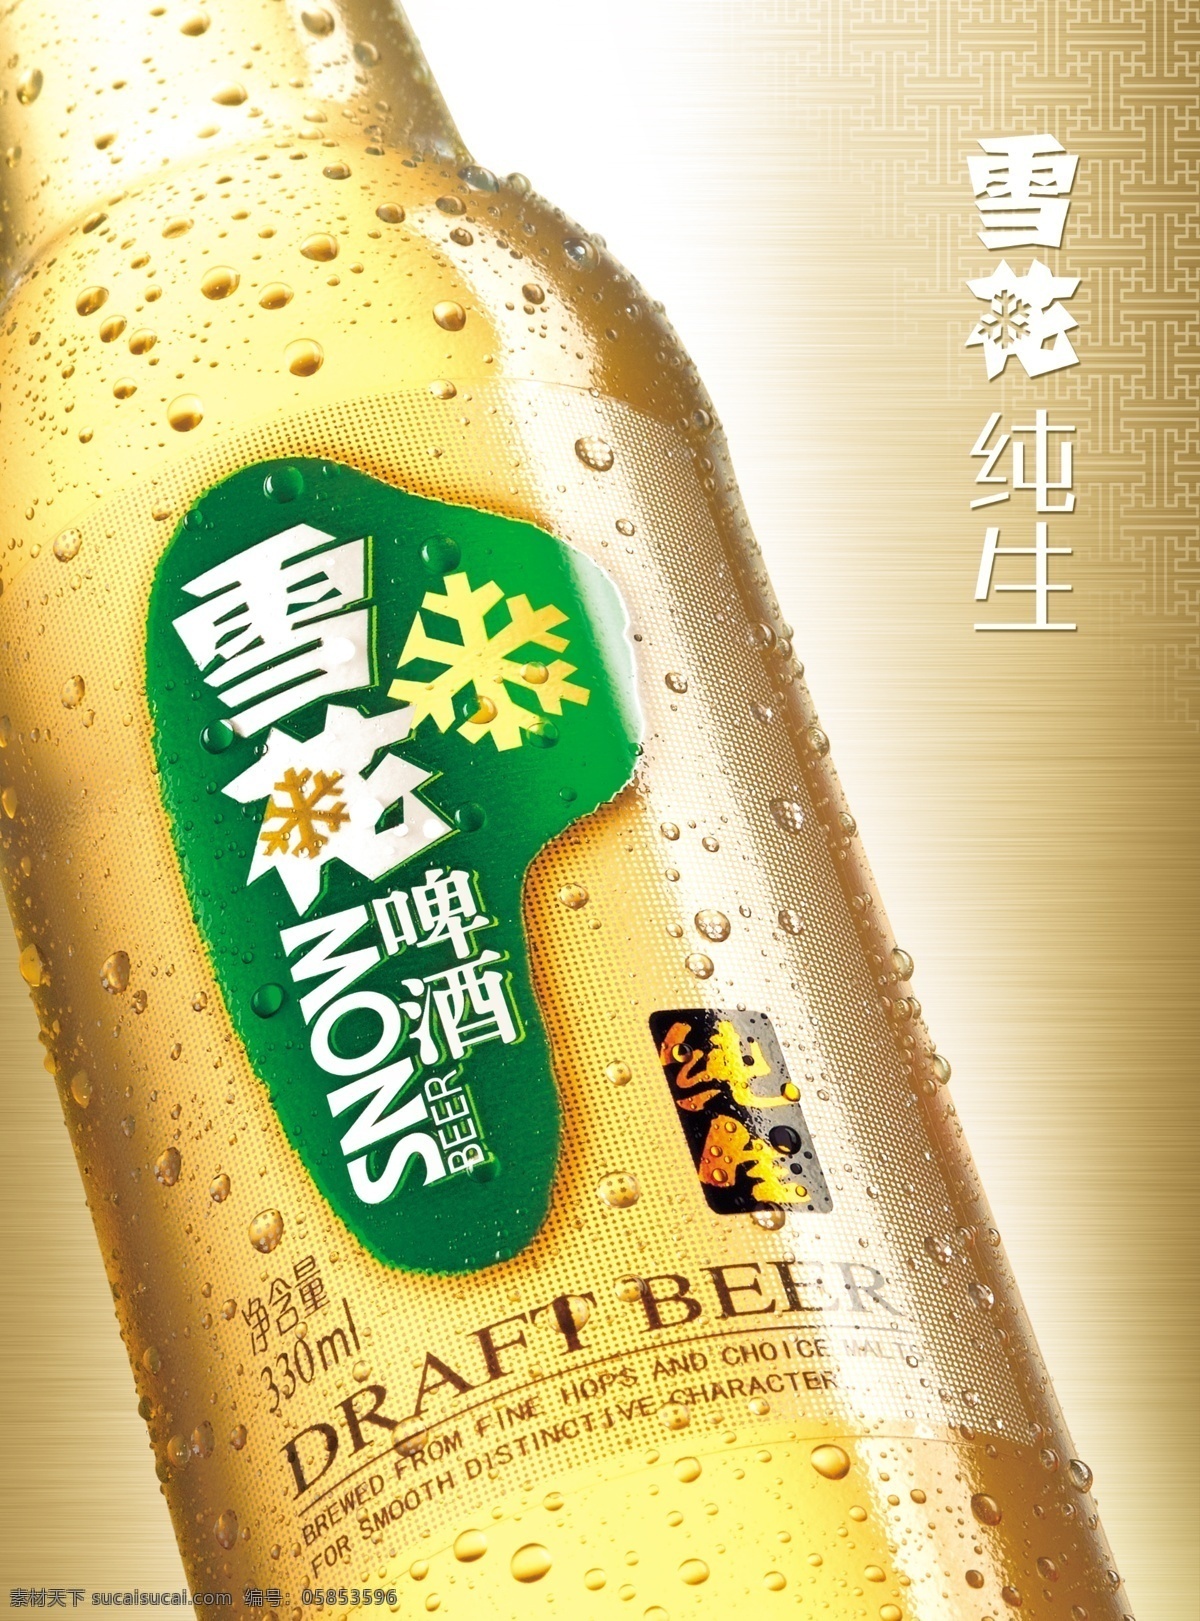 雪花啤酒 雪花纯生 酒瓶 啤酒 水珠 海报 广告设计模板 源文件